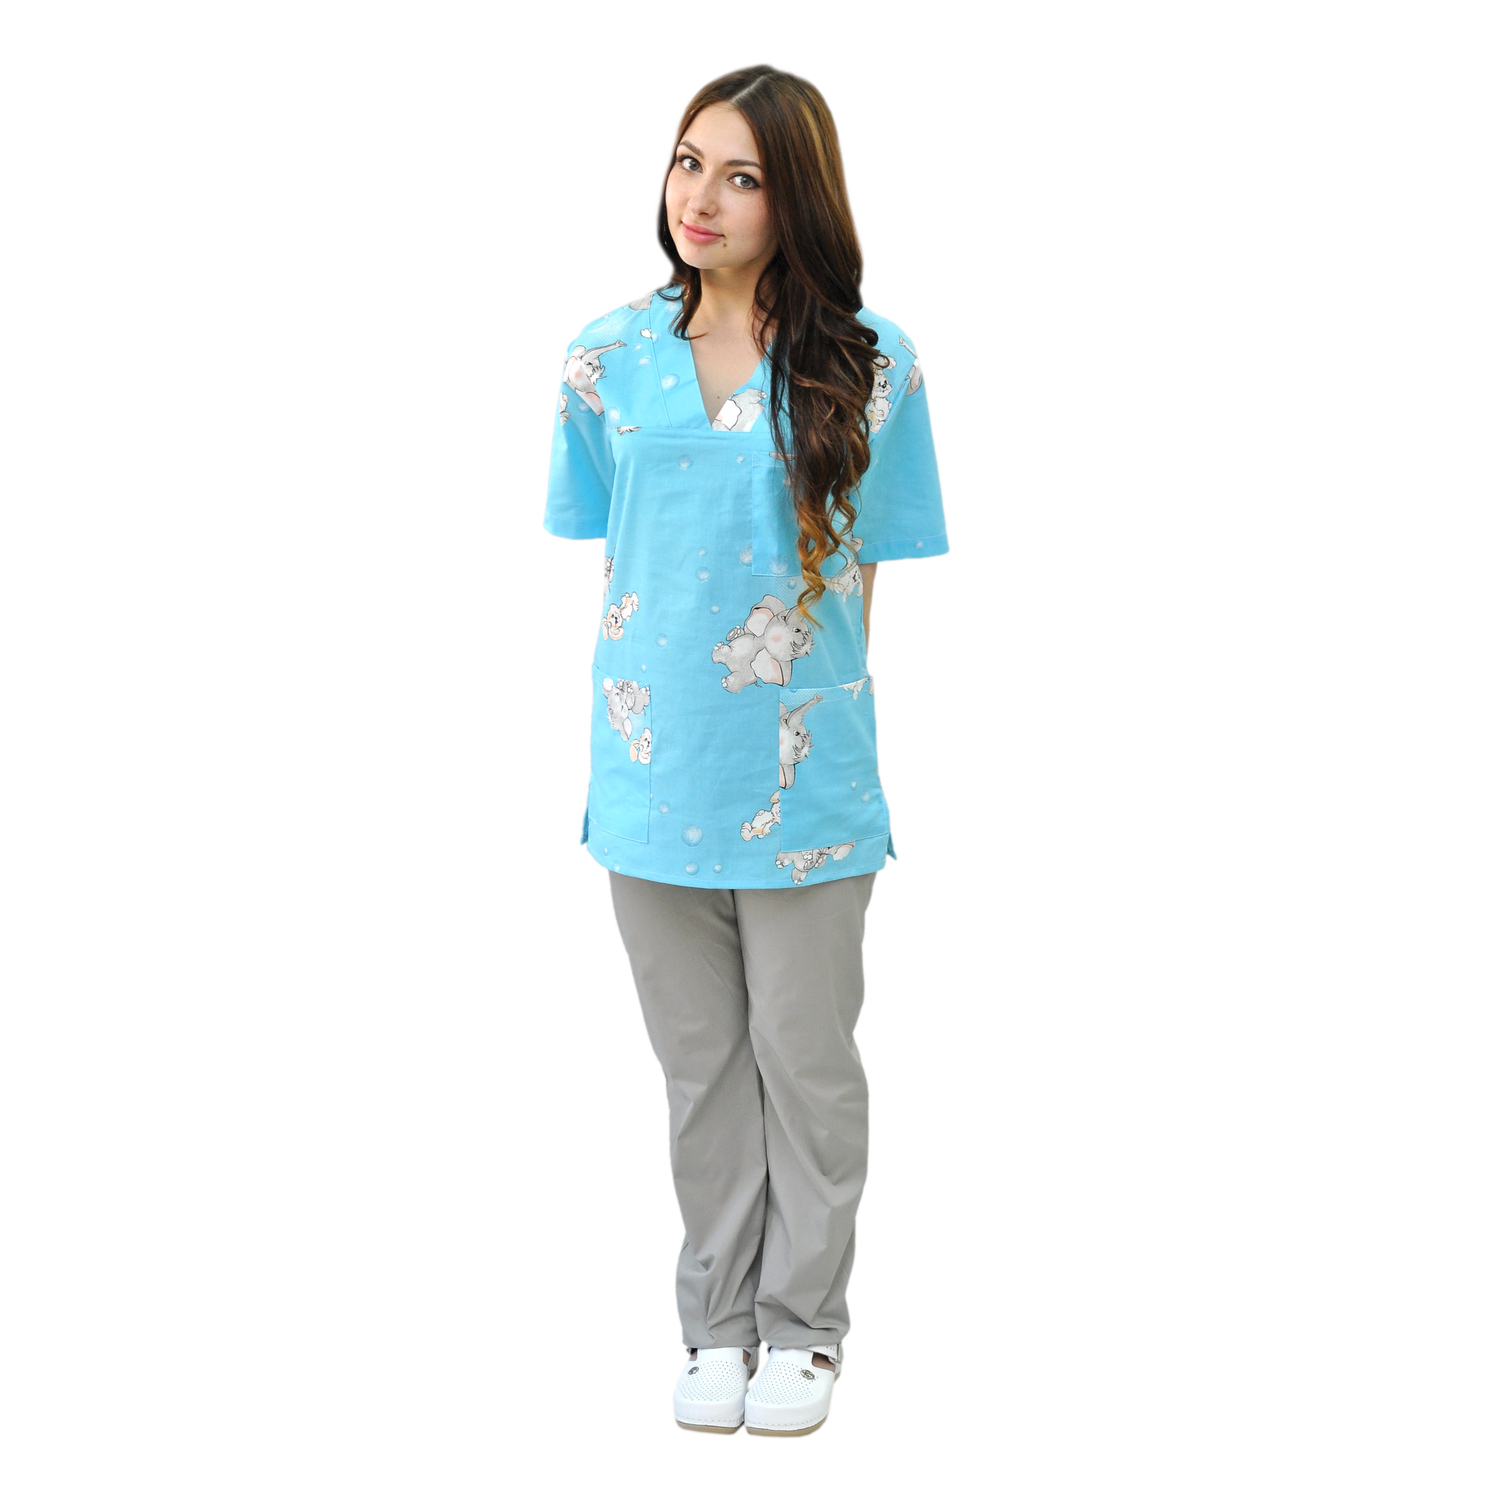 

Рубашка медицинская женская IVUNIFORMA Хирург бирюзовая 52-54 RU, Бирюзовый, Хирург